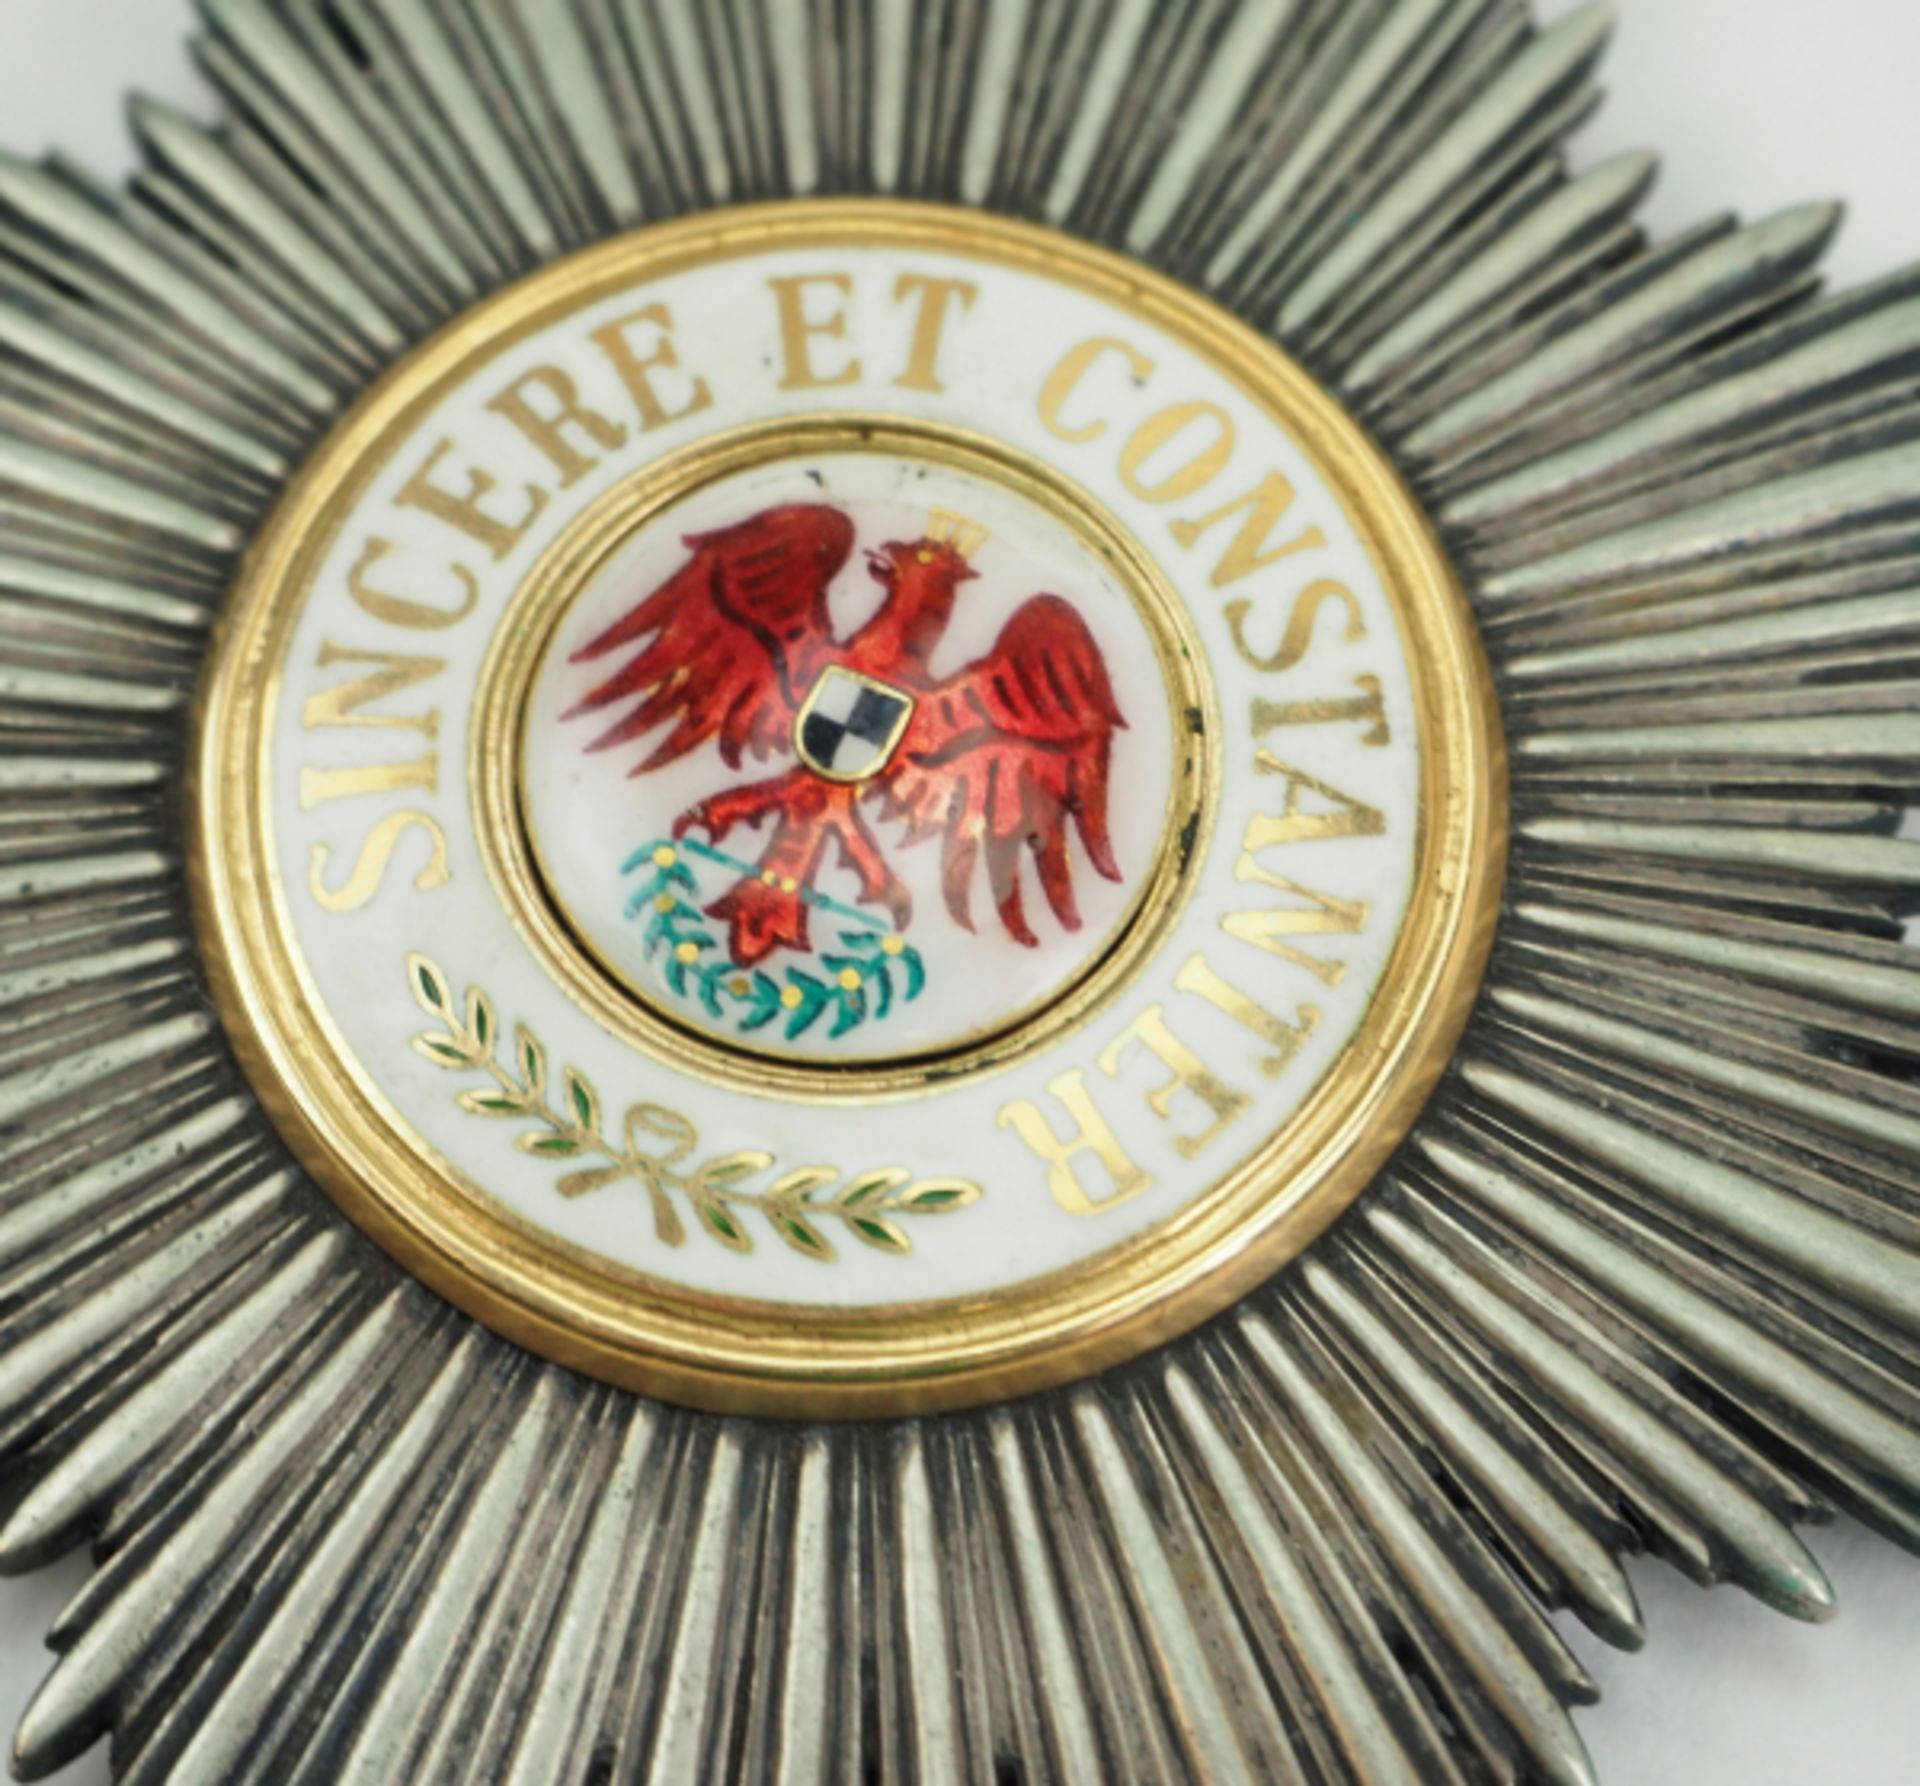 Preussen: Roter Adler Orden, Dekoration für Nichtchristen, 1. Klasse Kleinod. - Bild 2 aus 3